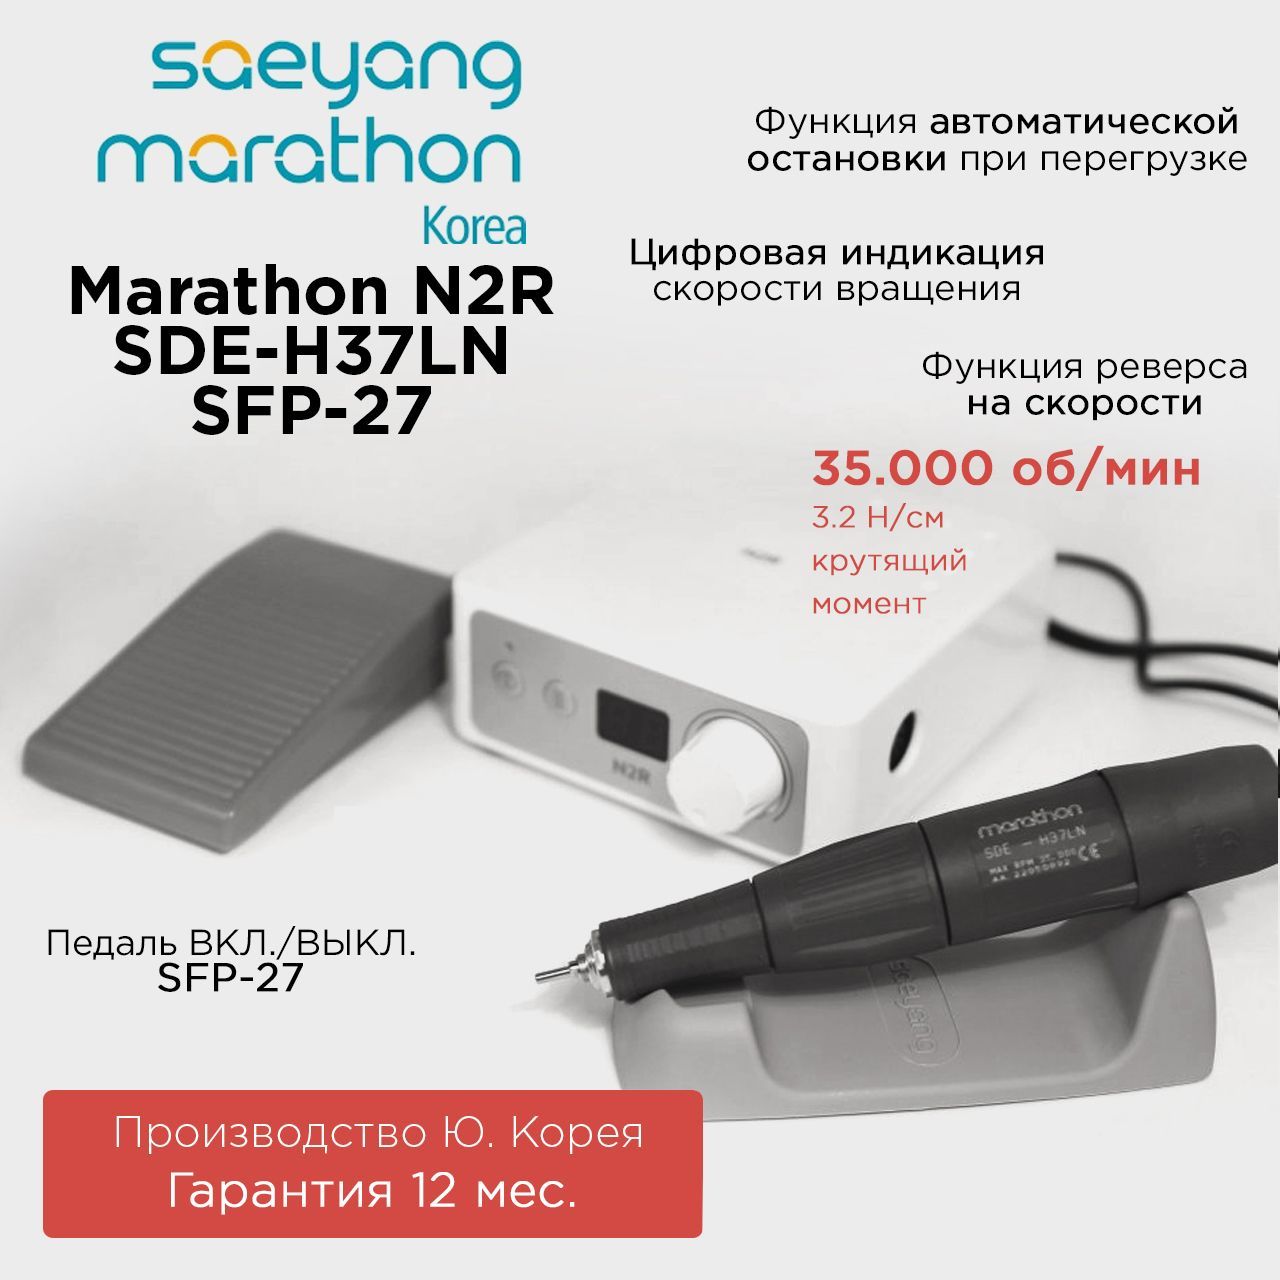 Аппарат для маникюра Marathon N2R SDE-H37LN с педалью SFP-27